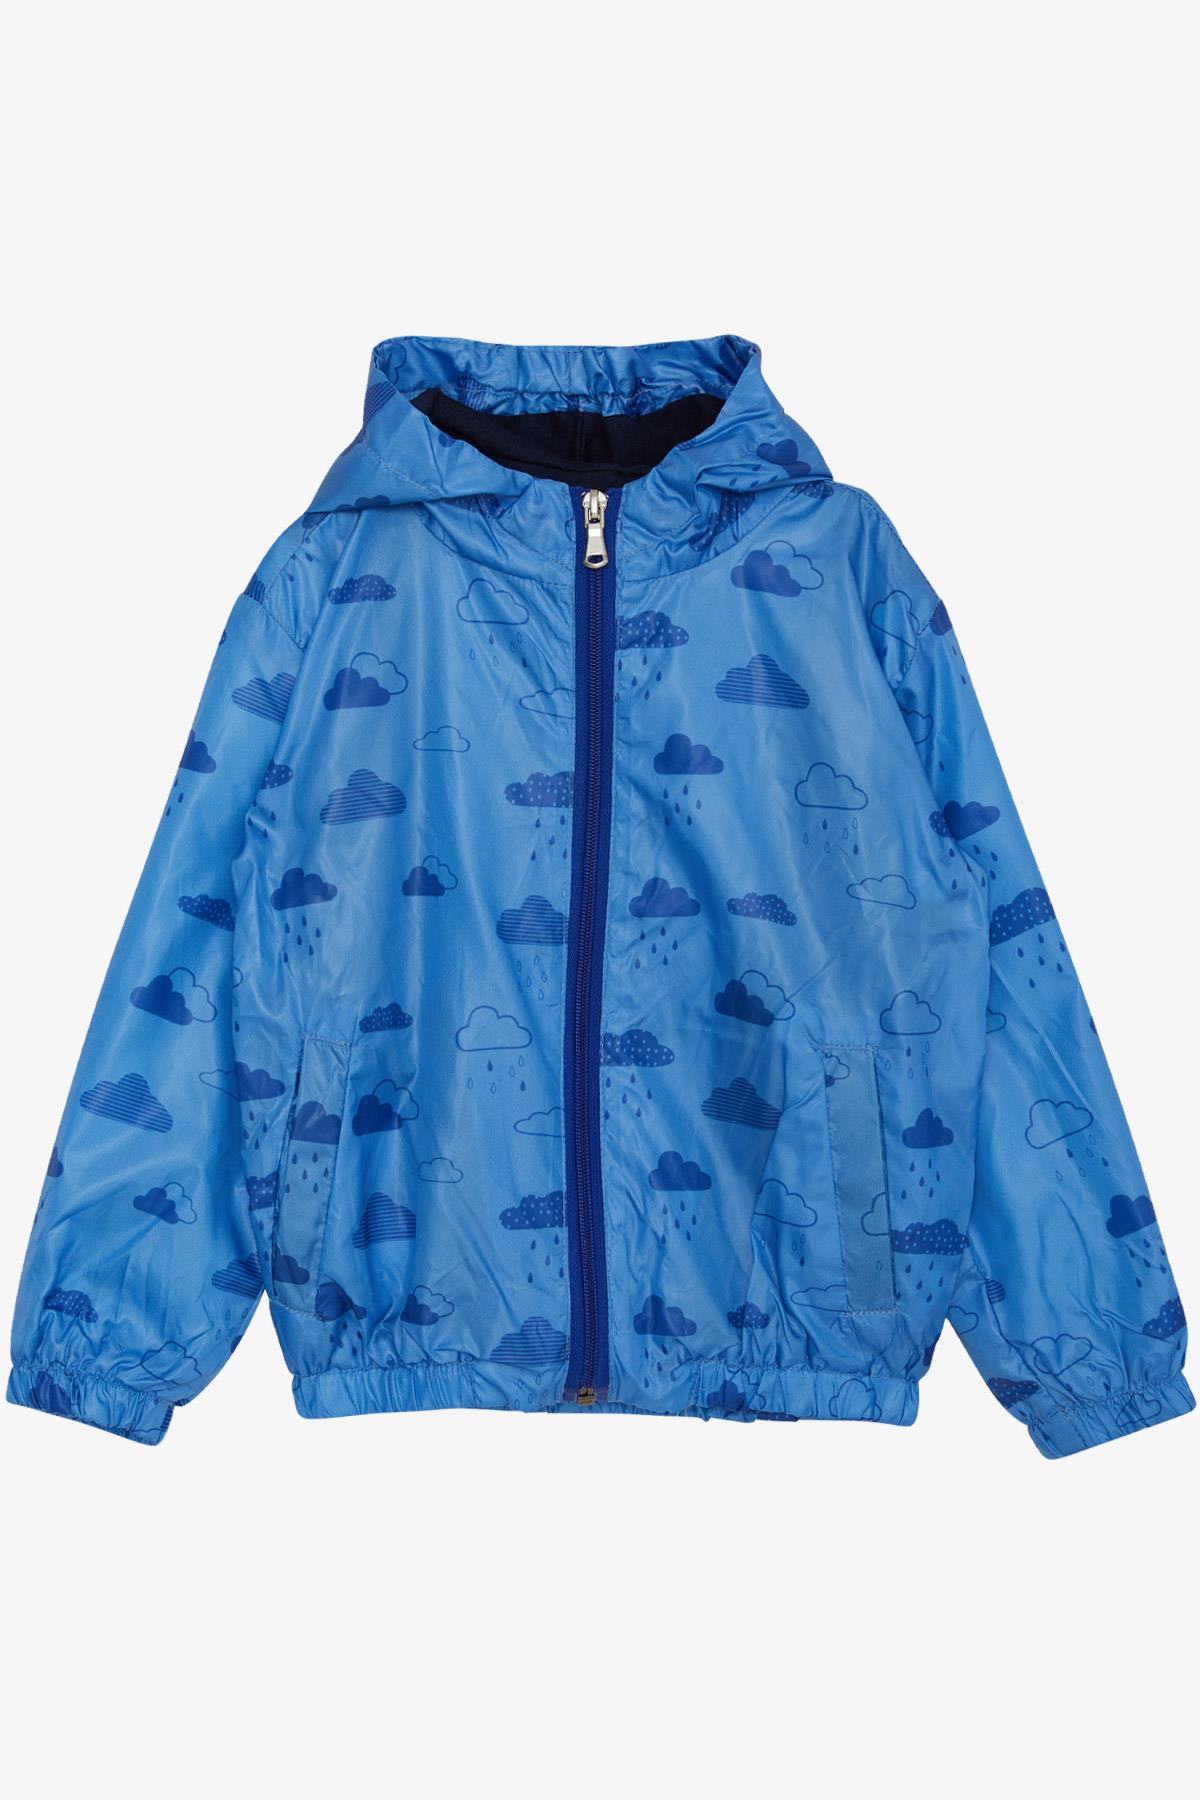 Erkek Çocuk Yağmurluk Bulut Desenli Mavi 1-6 Yaş - Çocuk Mont ve Yağmurluk  Modelleriı | Breeze